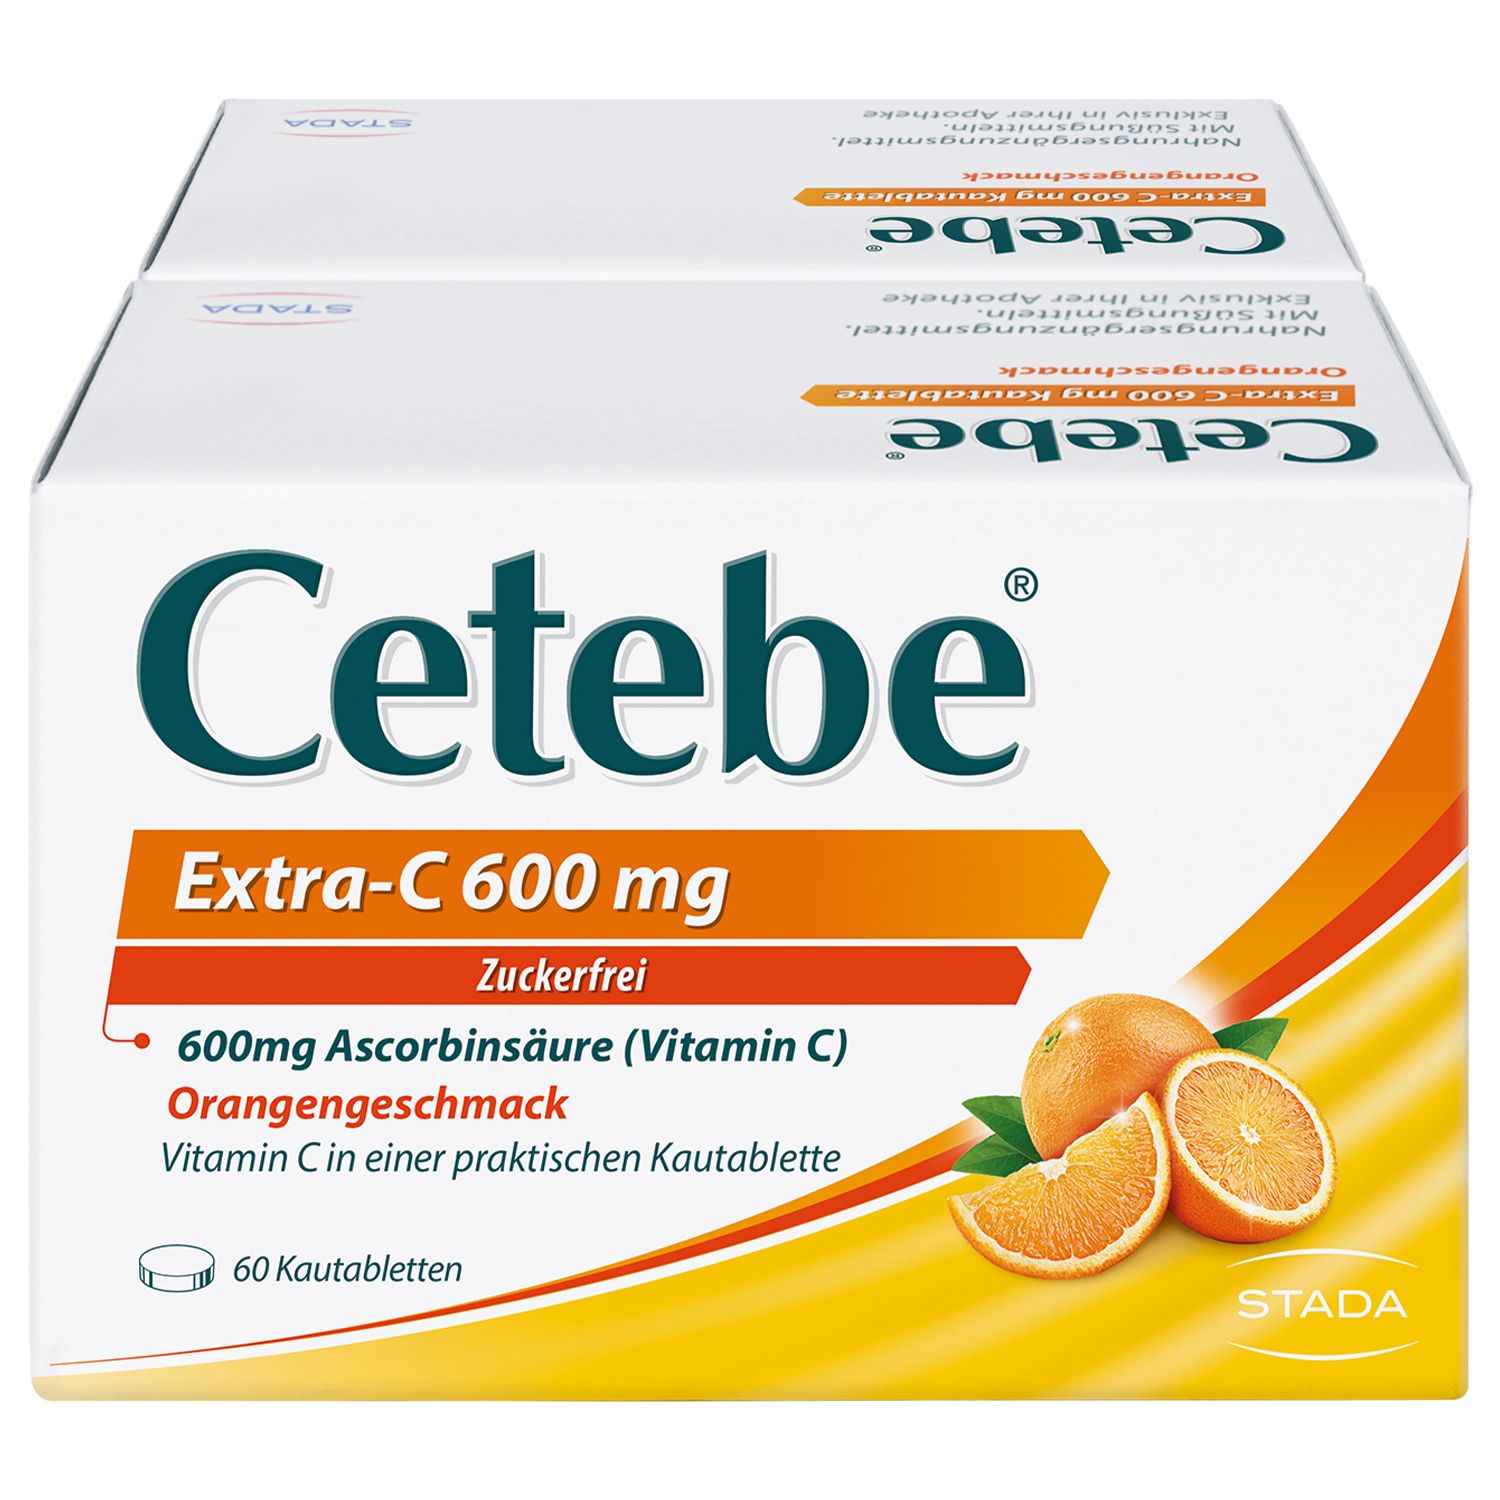 Cetebe® Extra-C 600 mg